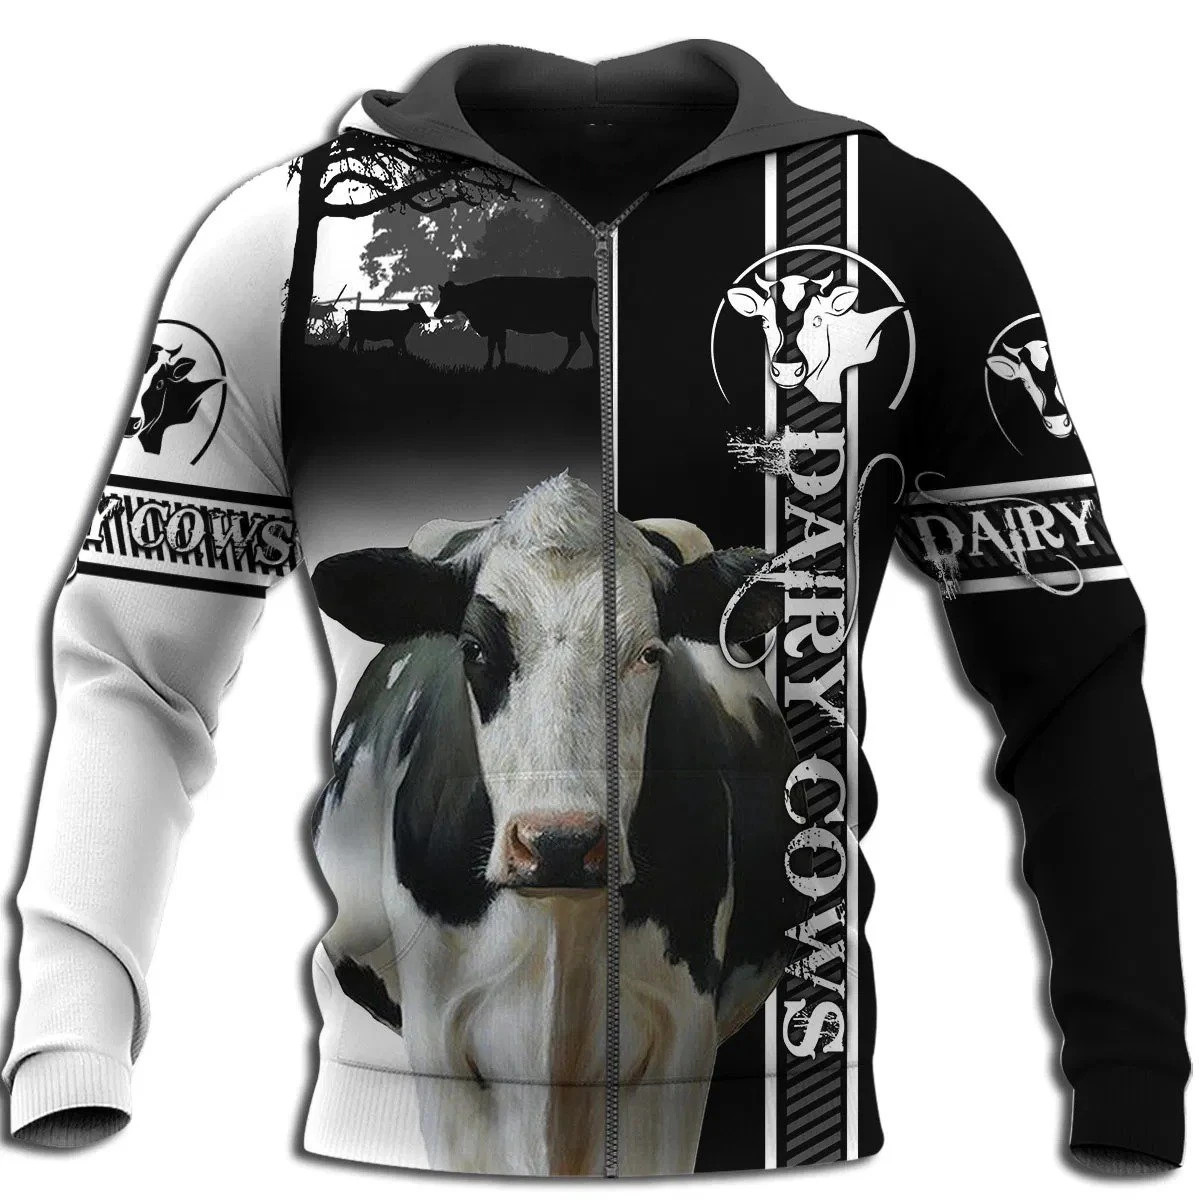 Dairy Cow Hoodie T-Shirt Sweatshirt for Men and Women NM121102-Apparel-NM-Zip hoodie-S-Vibe Cosy™